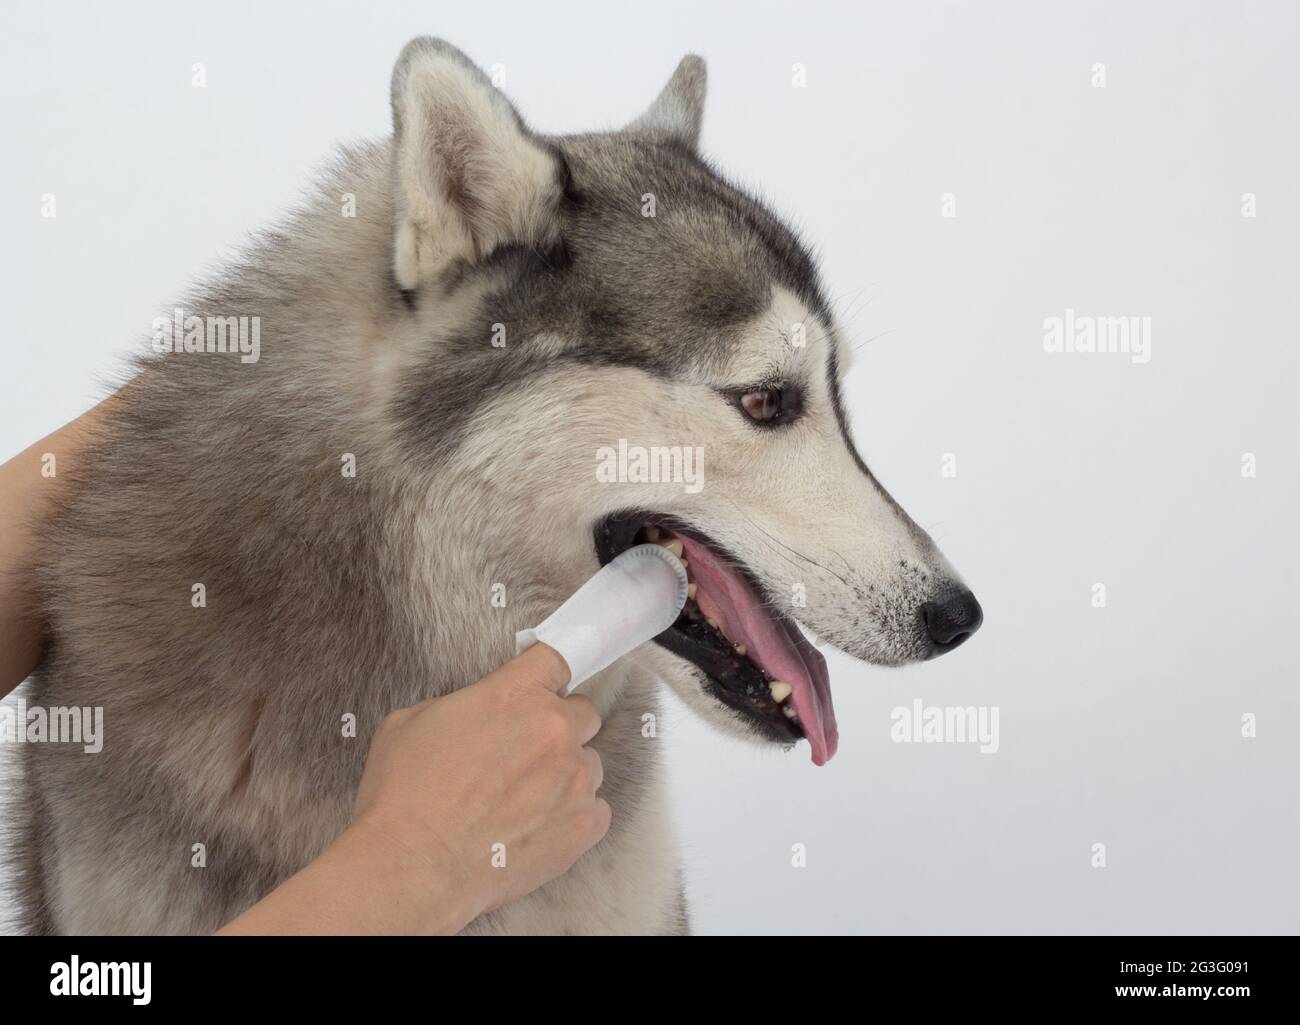 Die Zahnreinigung der Hunde mit zahnärztlichen Fingertüchern hilft Plaque zu reduzieren und die Atmung zu erfrischen. Gesundheitskonzept für Haustiere Stockfoto